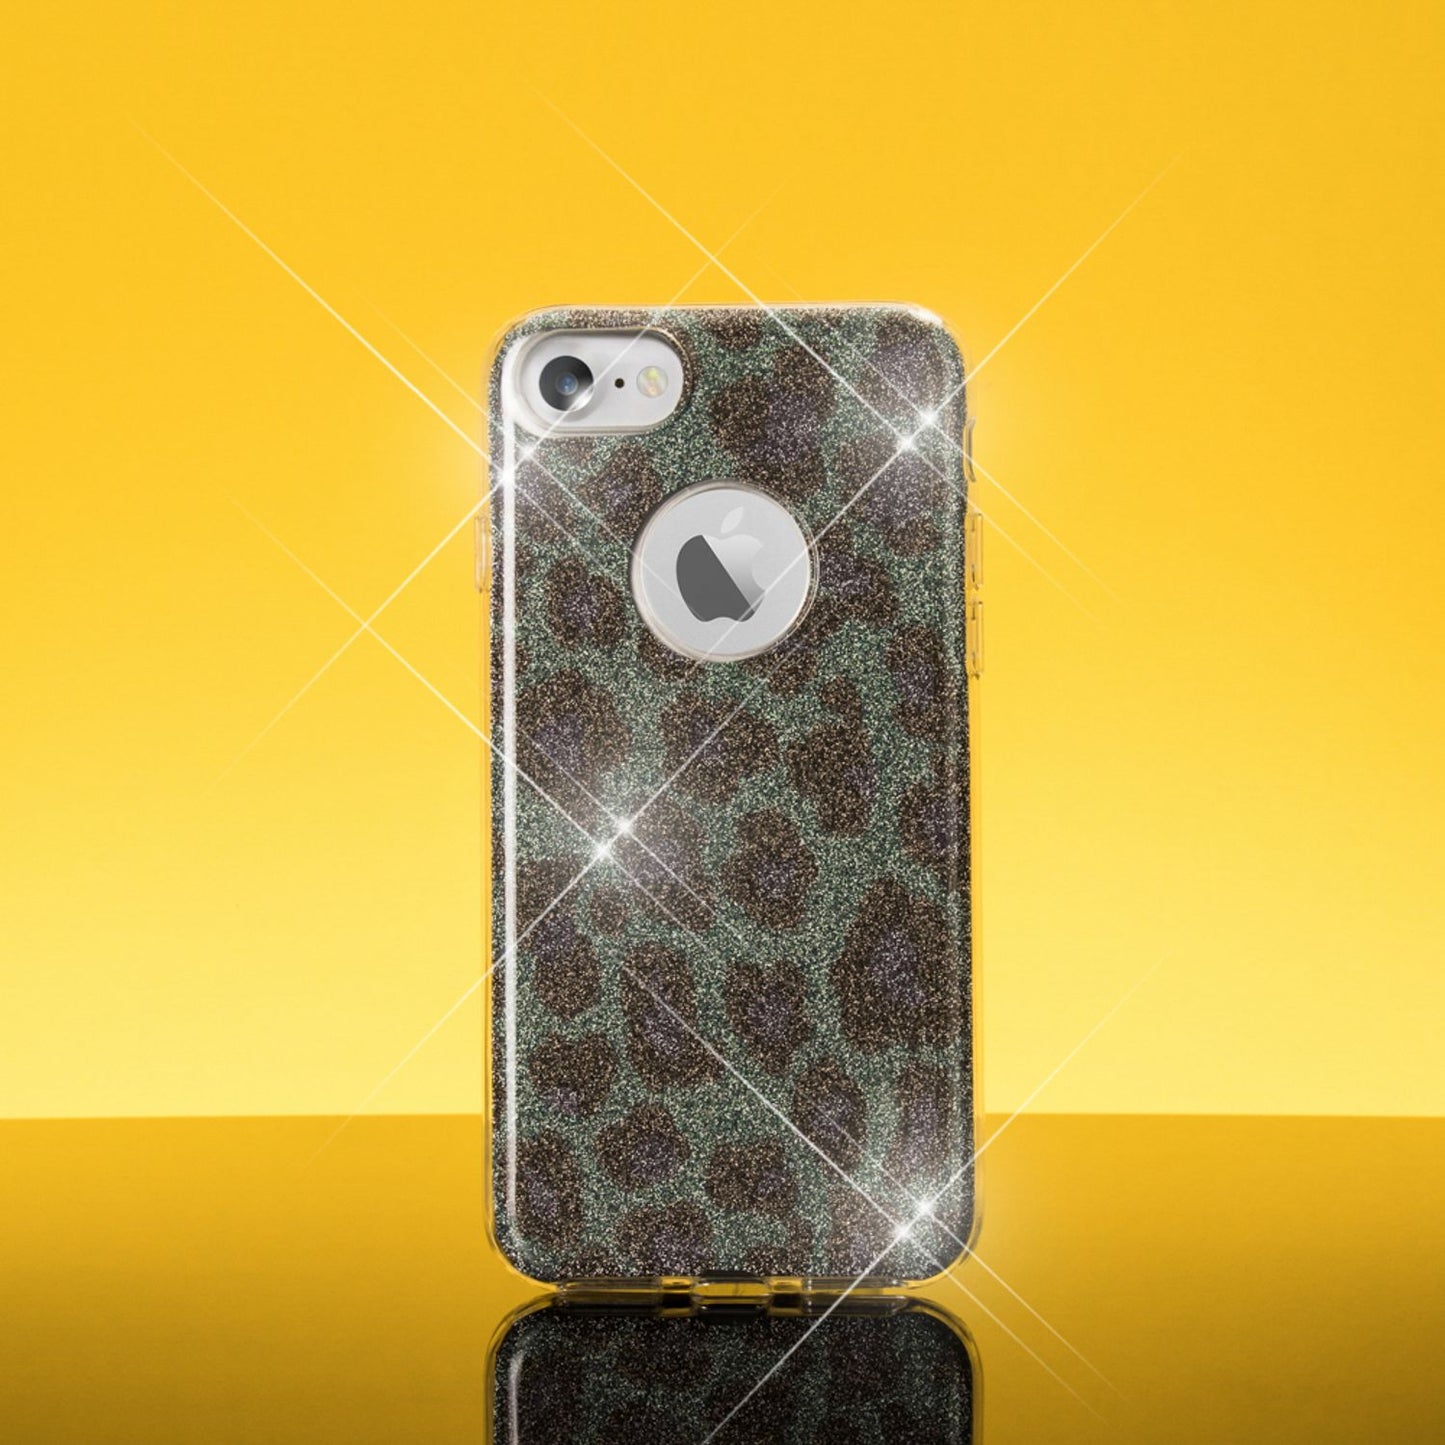 Apple iPhone 7 Handy Hülle von NALIA, Leopard Glitzer Case Cover Bling Schutz